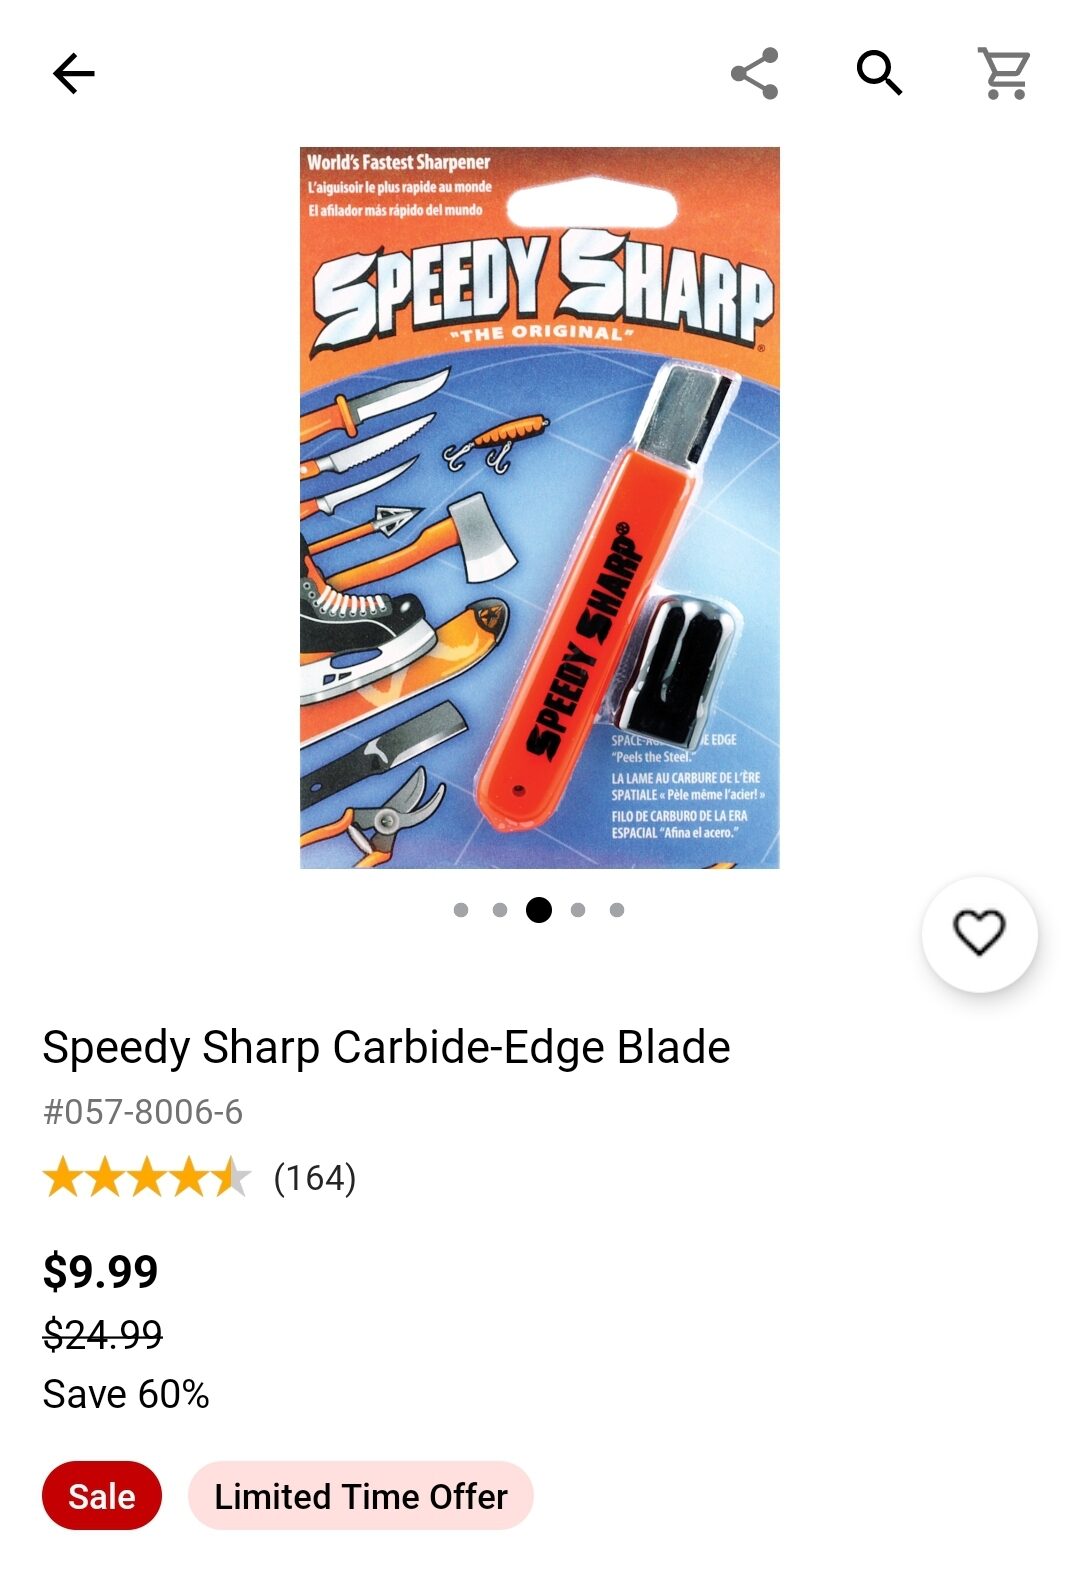 Canadian Tire] Speedy Sharp sharpener-$9.99 - RedFlagDeals.com Forums